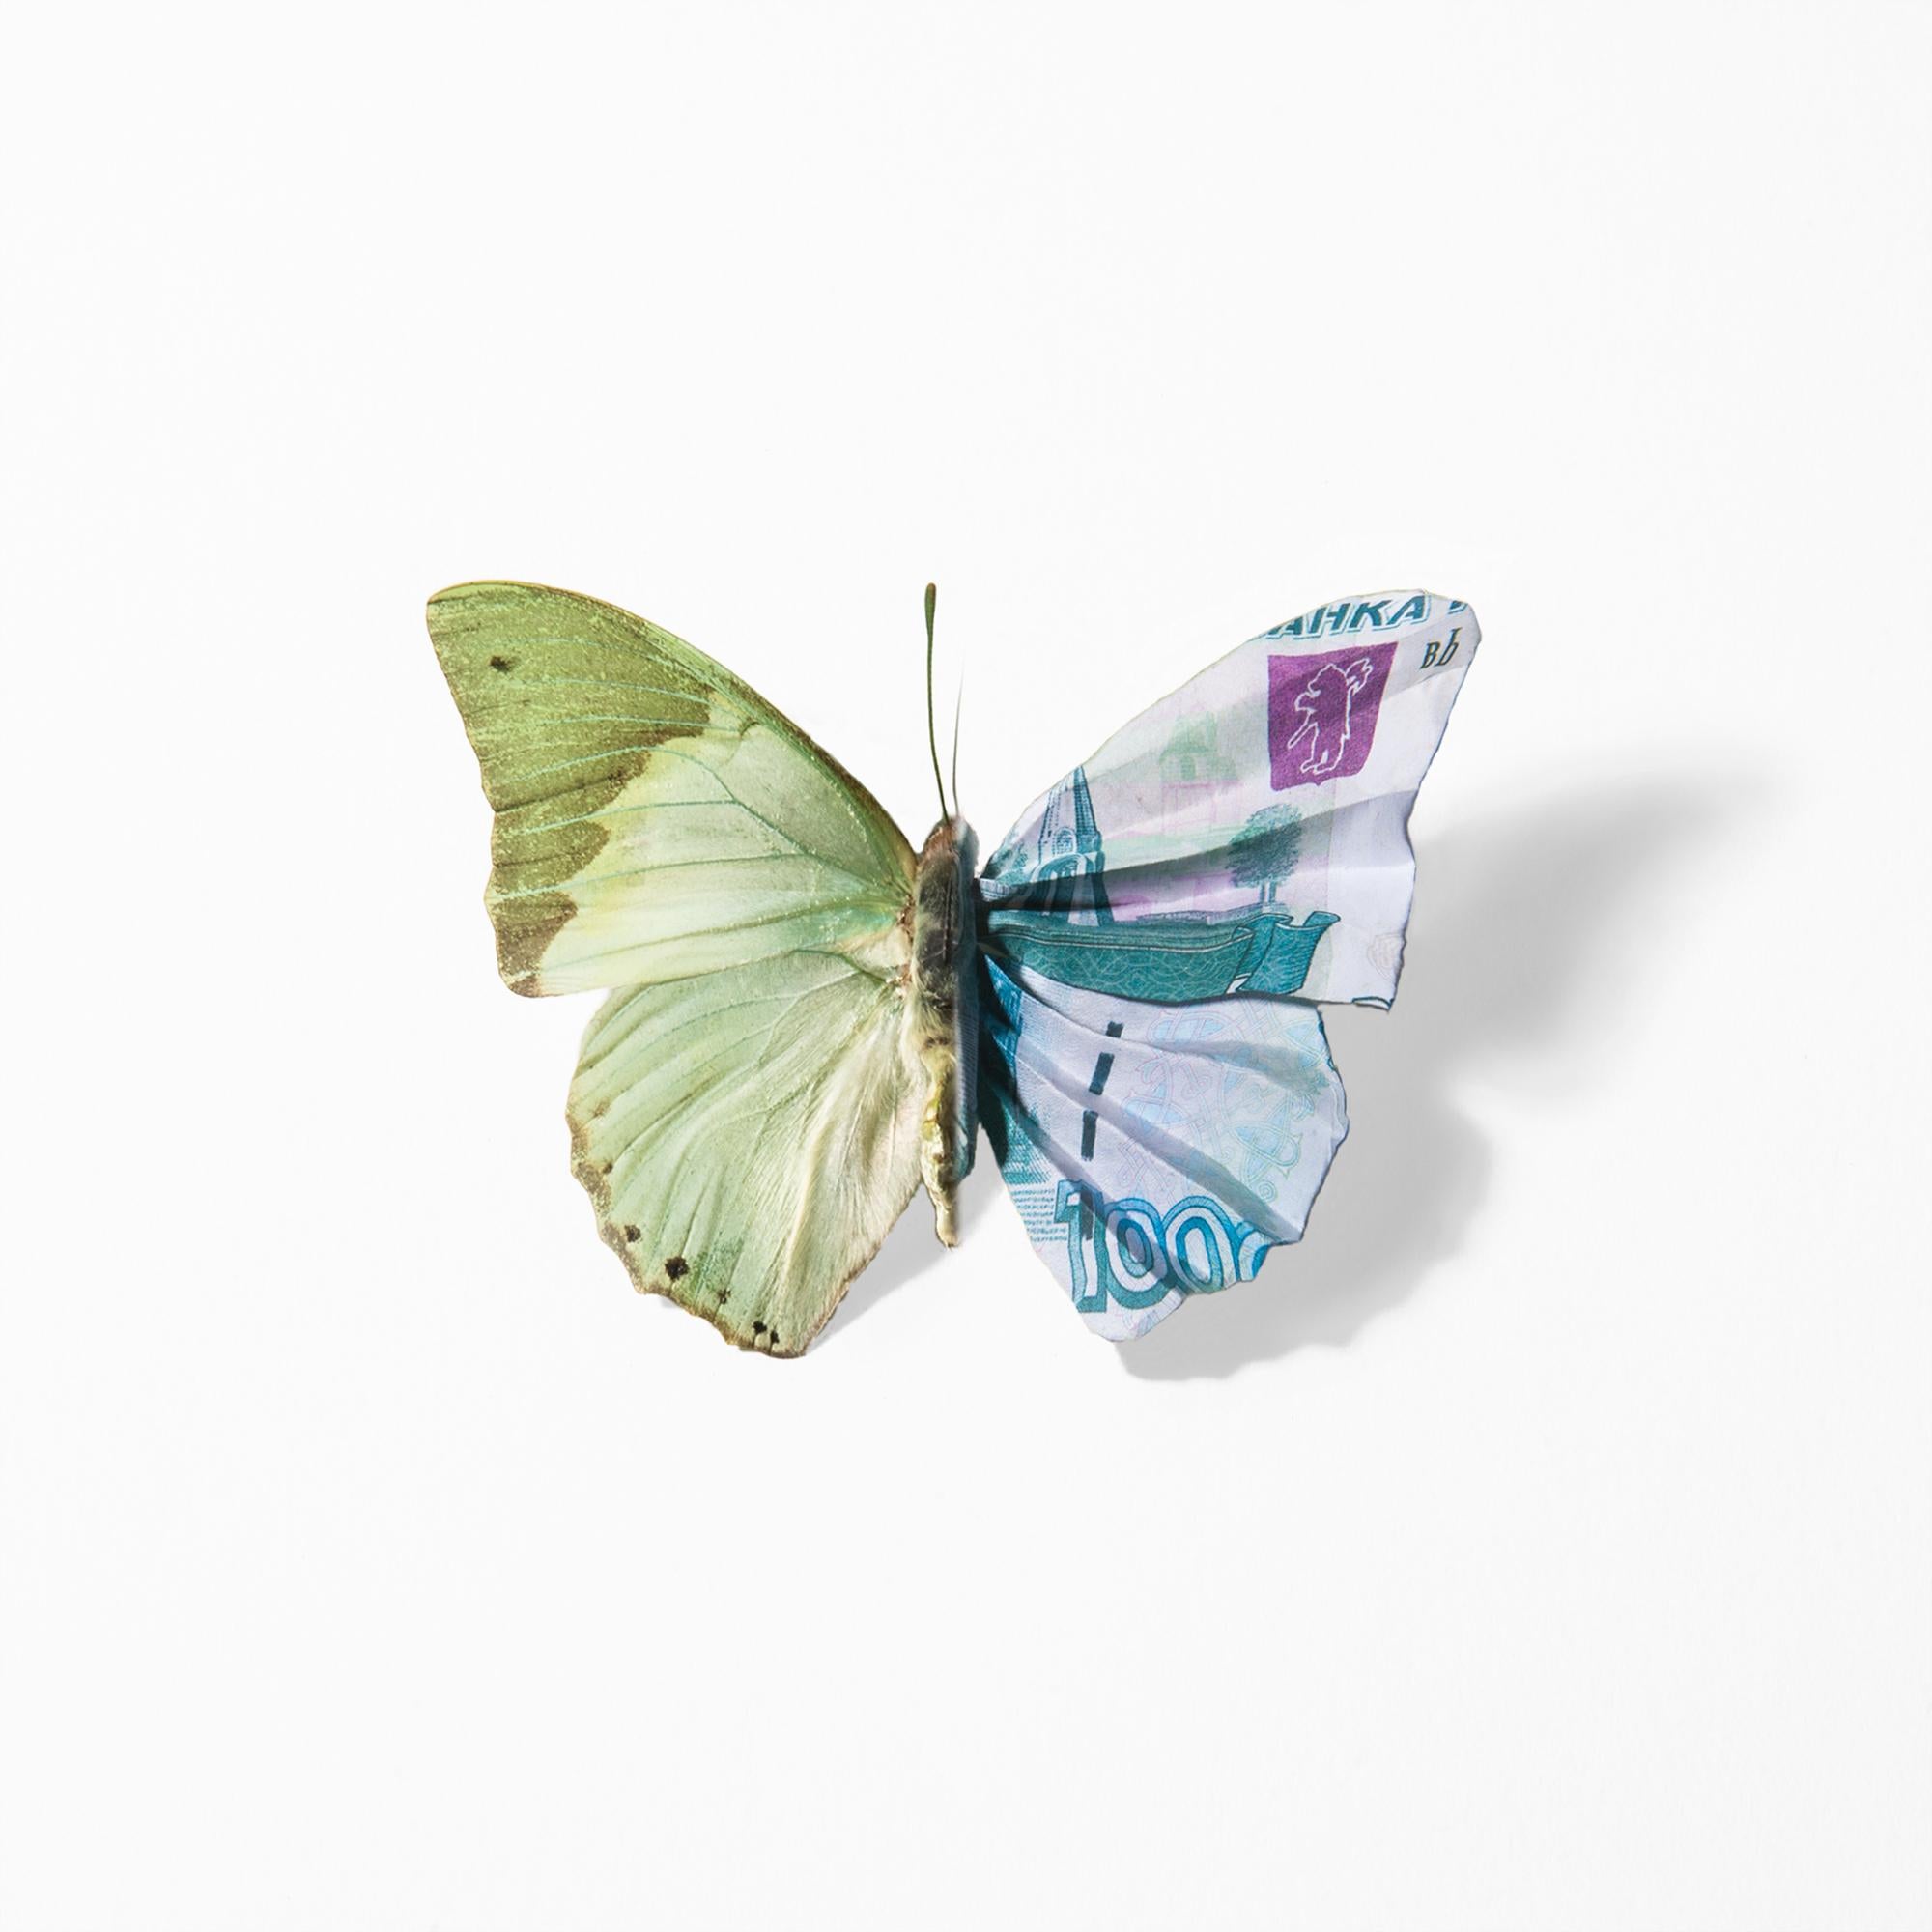 "Une chose de beauté #7 (Charaxes)" Transition lenticulaire entre le papillon et la monnaie